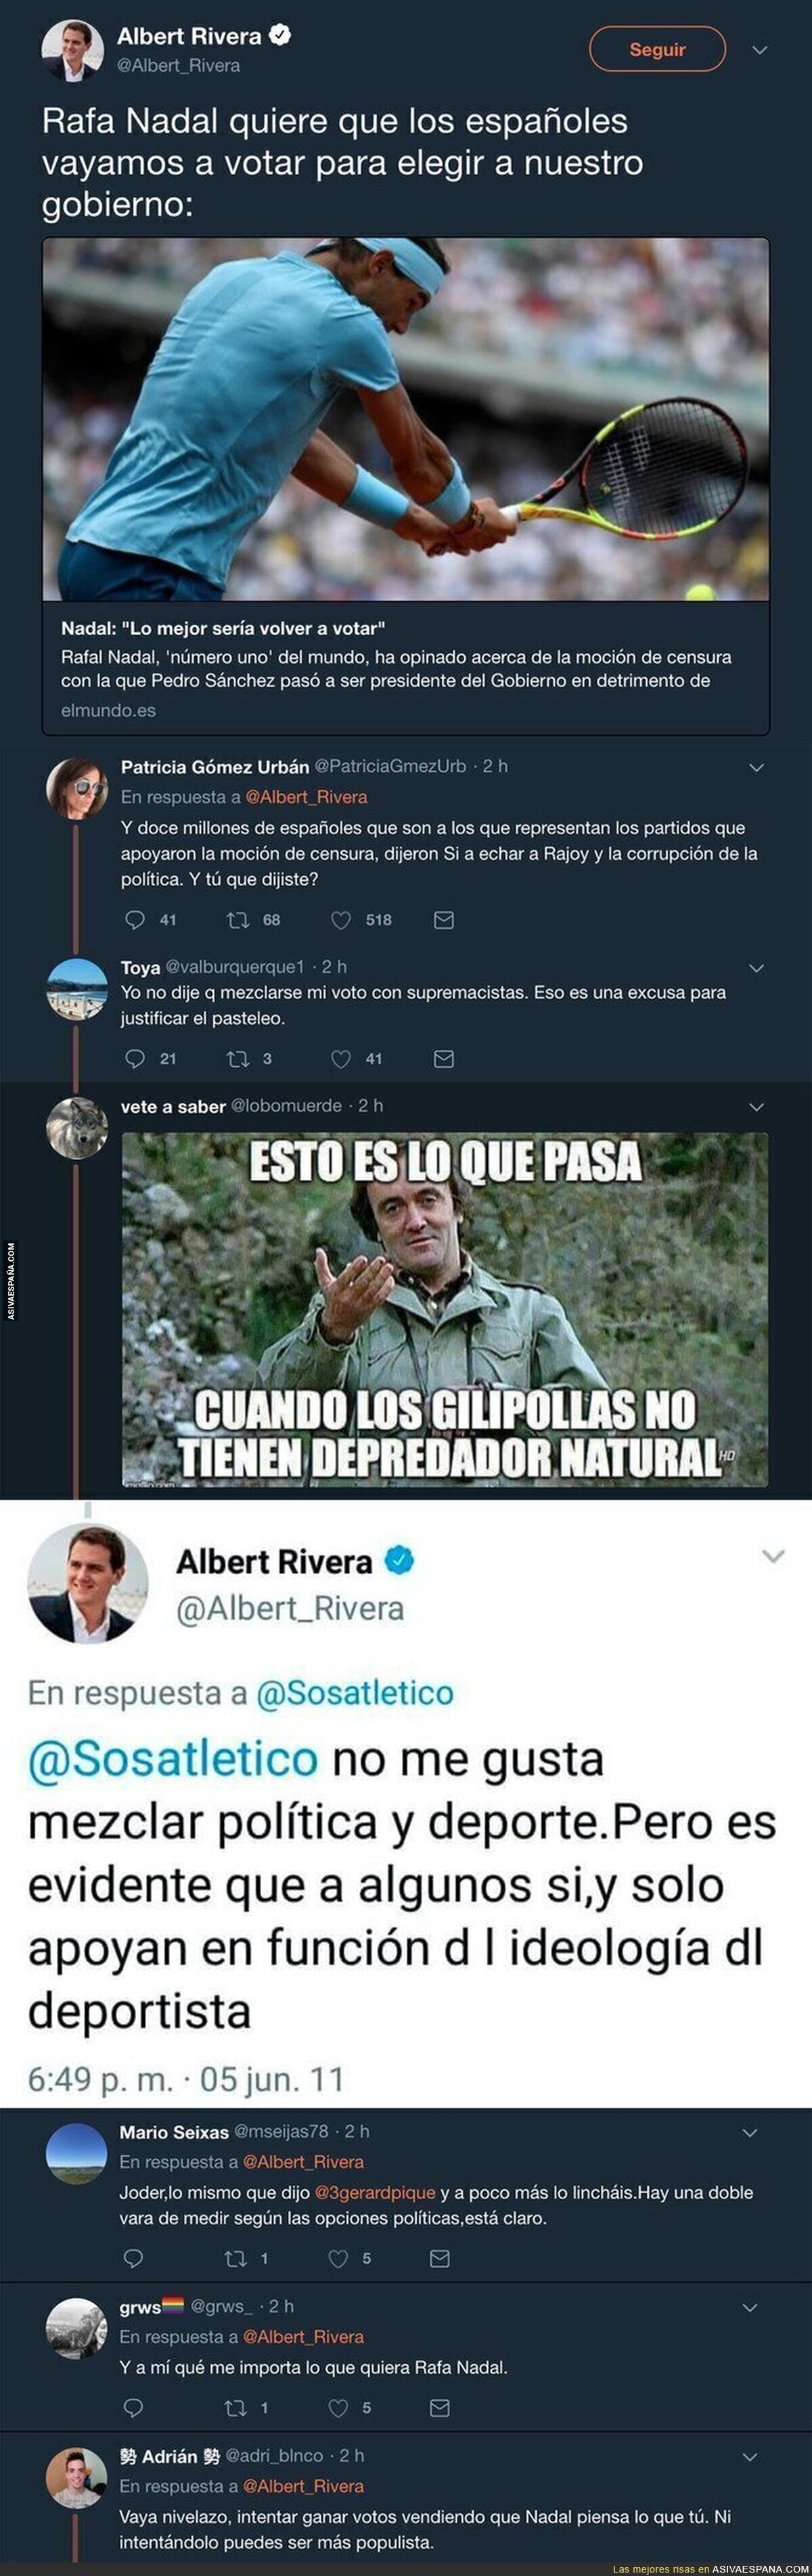 Albert Rivera usa a Rafa Nadal políticamente y queda retratado al recocrdar lo que dijo en el pasado